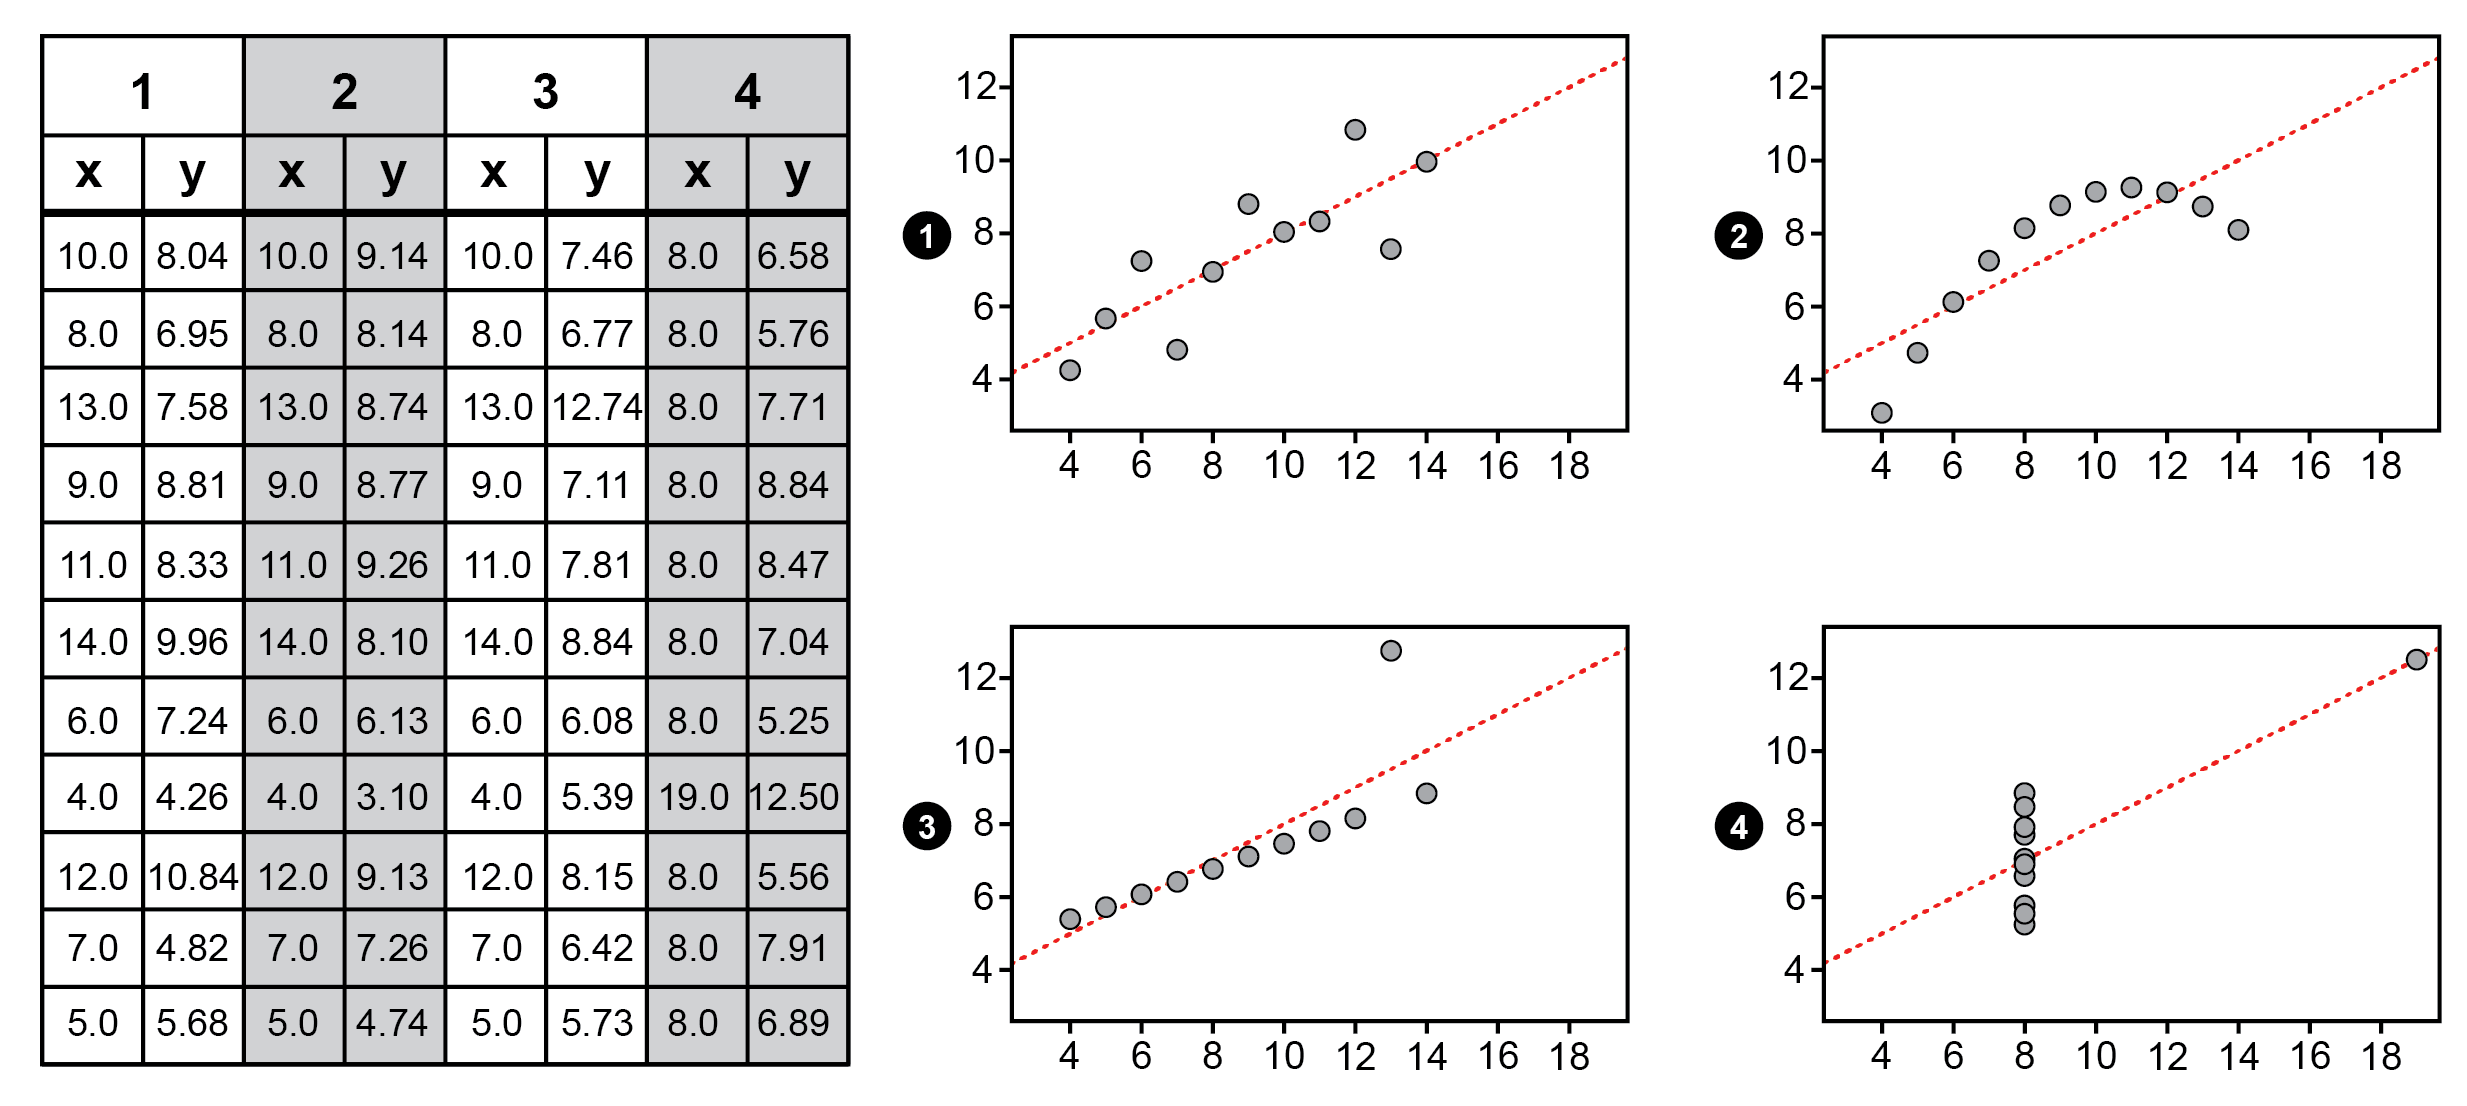 Datatabell och 4 grafer som syftar till att demonstrera vikten av att visualisera